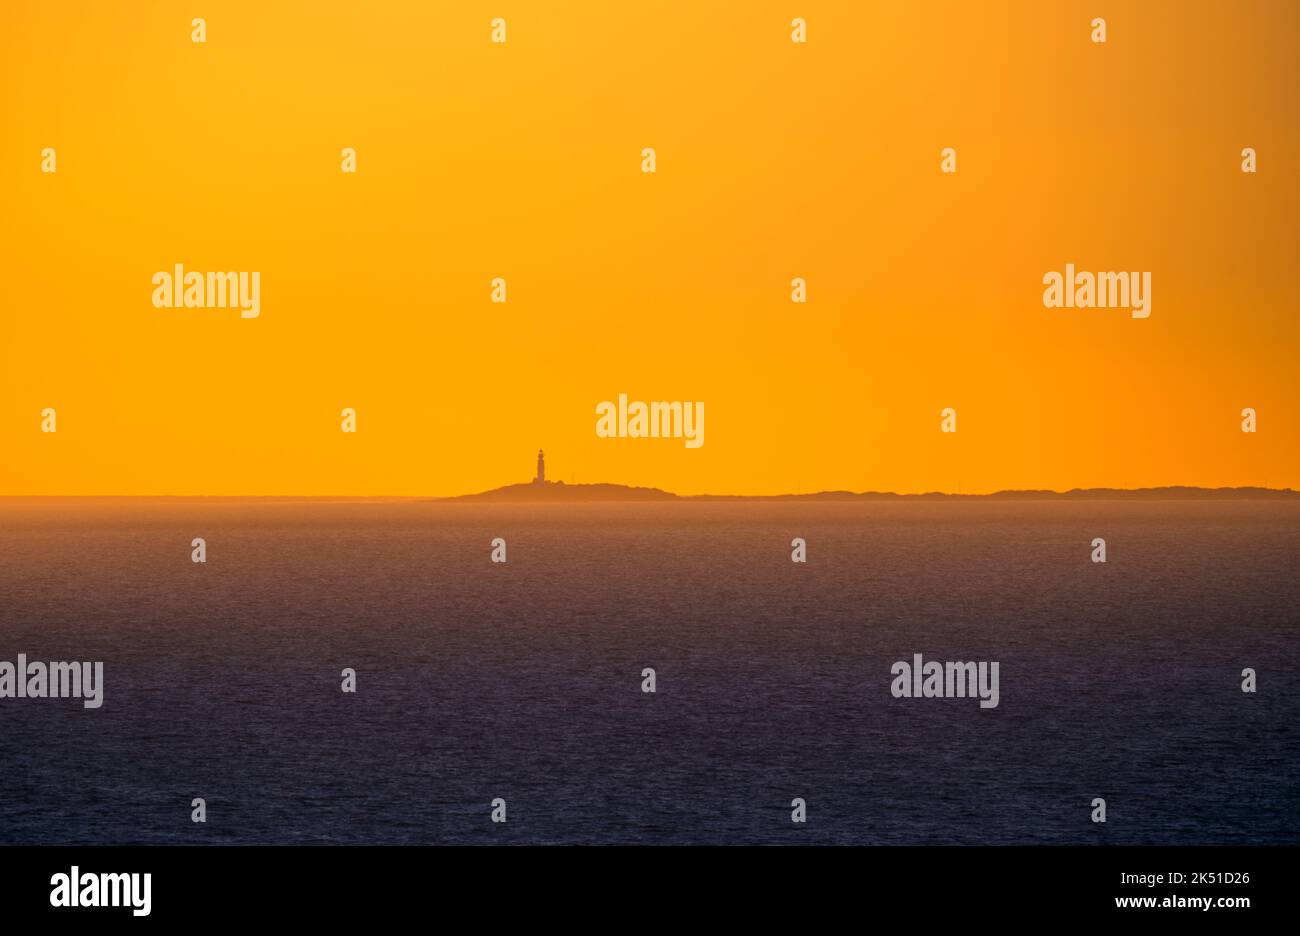 Maestoso paesaggio di faro distante su un piccolo isolotto in acqua di mare blu scuro con il cielo vivido arancio tramonto sopra Foto Stock